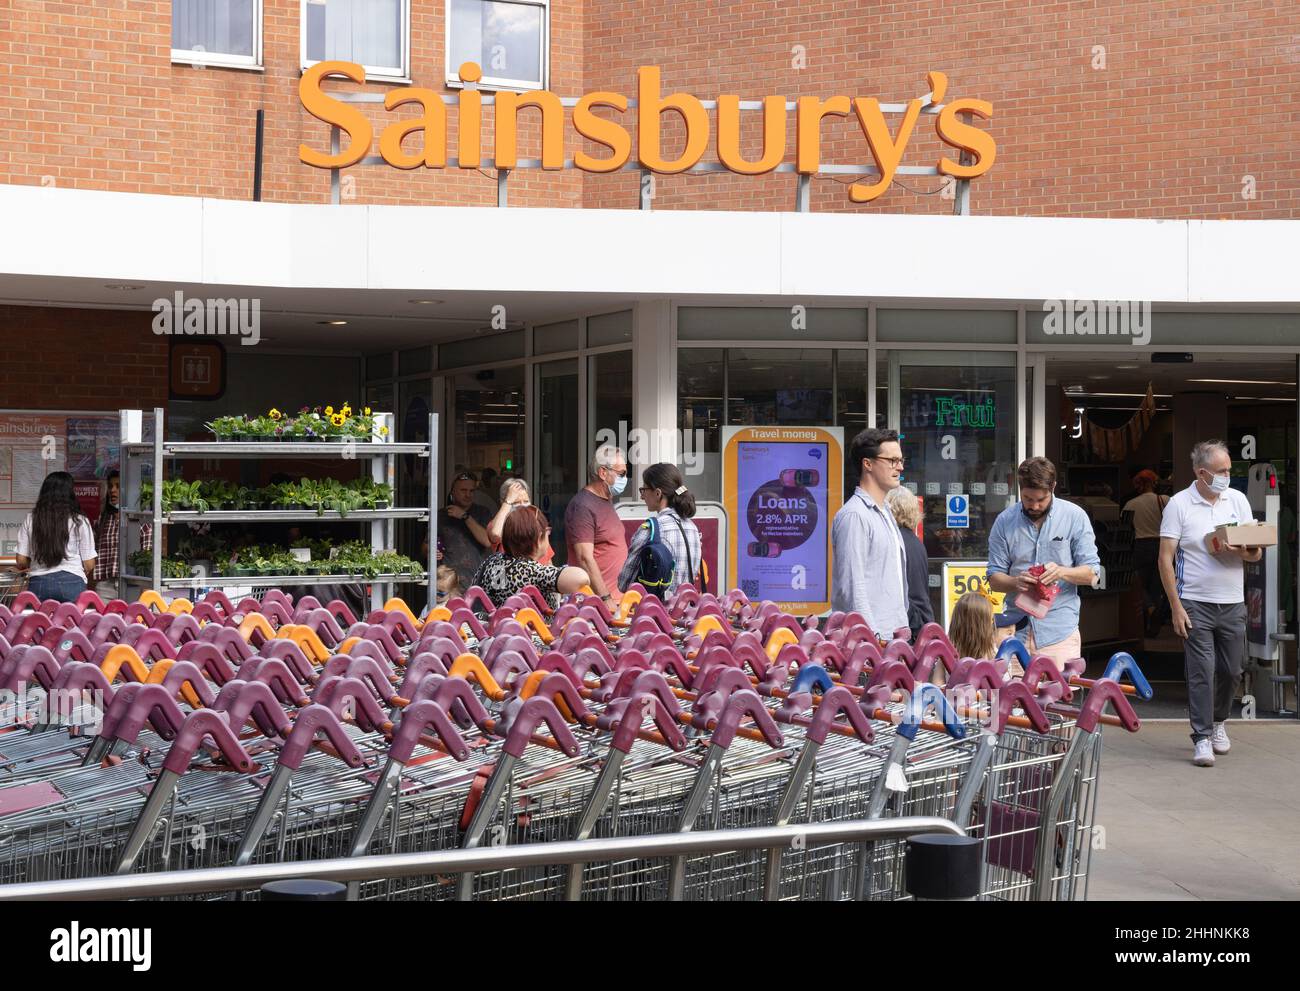 Supermarché Sainsbury's extérieur Harpenden Hertfordshire avec chariots et clients et panneau Sainsbury's, Hertfordshire UK Banque D'Images